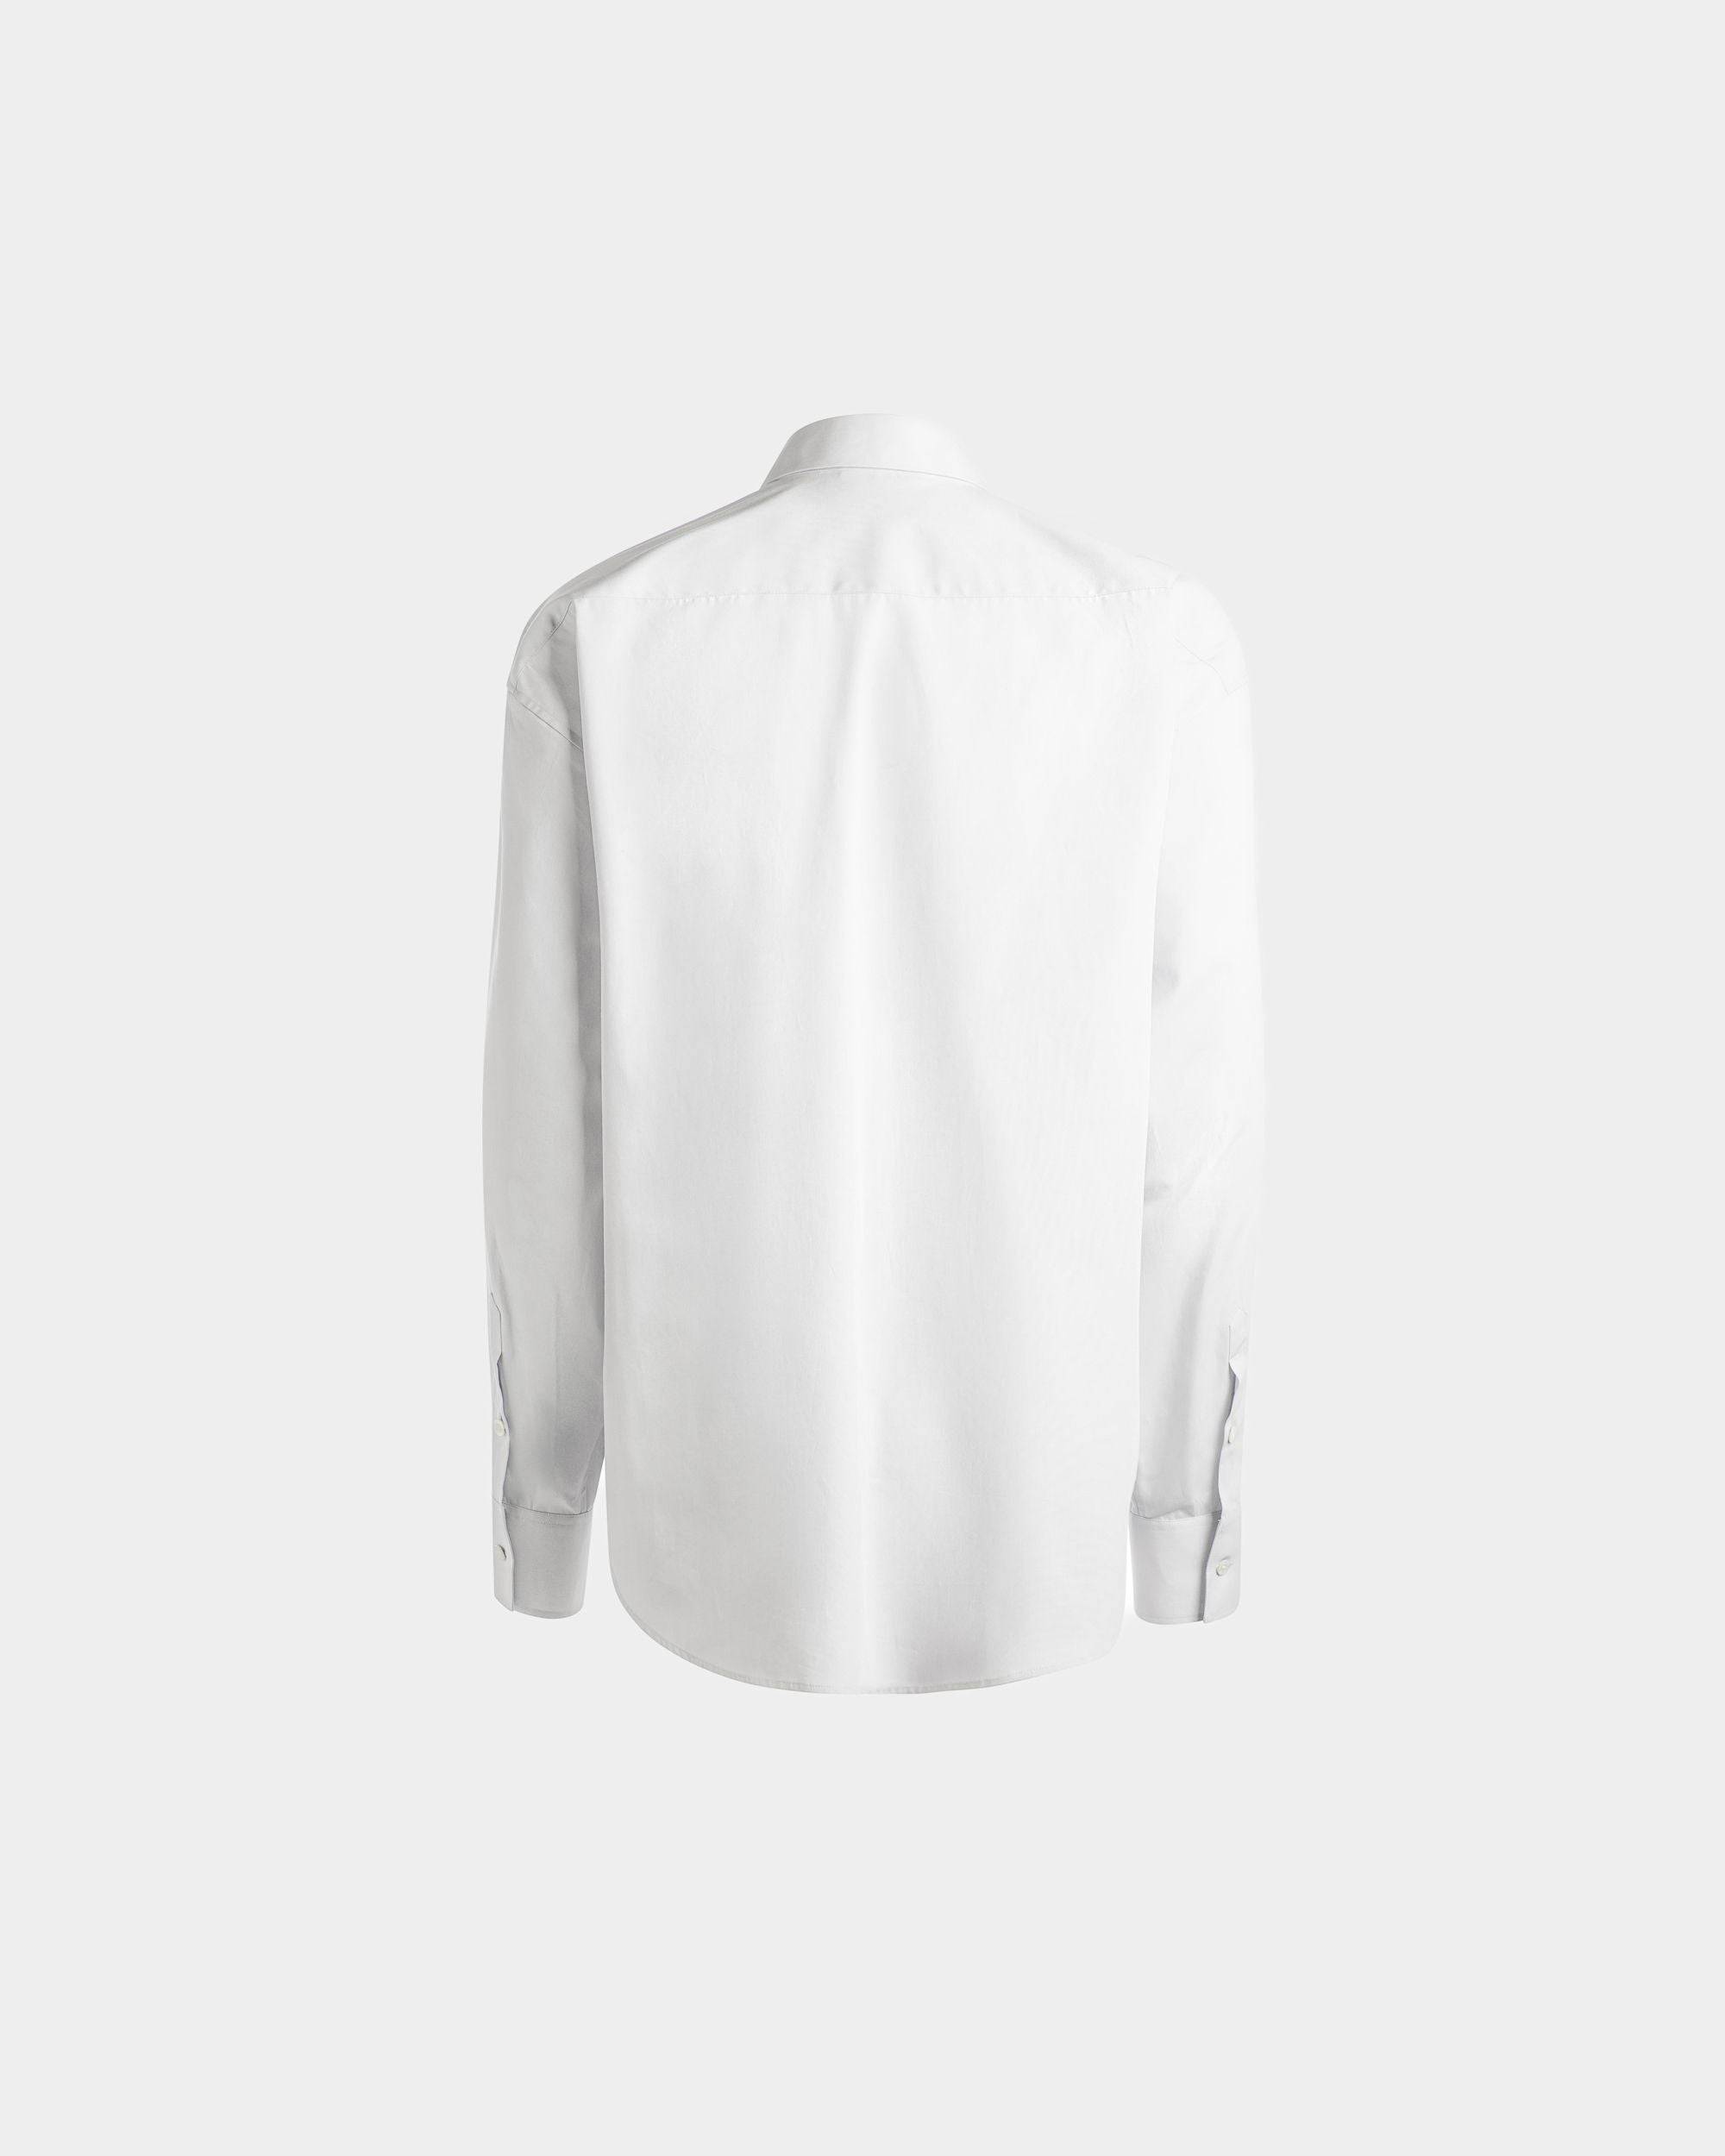 Herrenhemd aus weißer Baumwolle | Bally | Still Life Rückseite